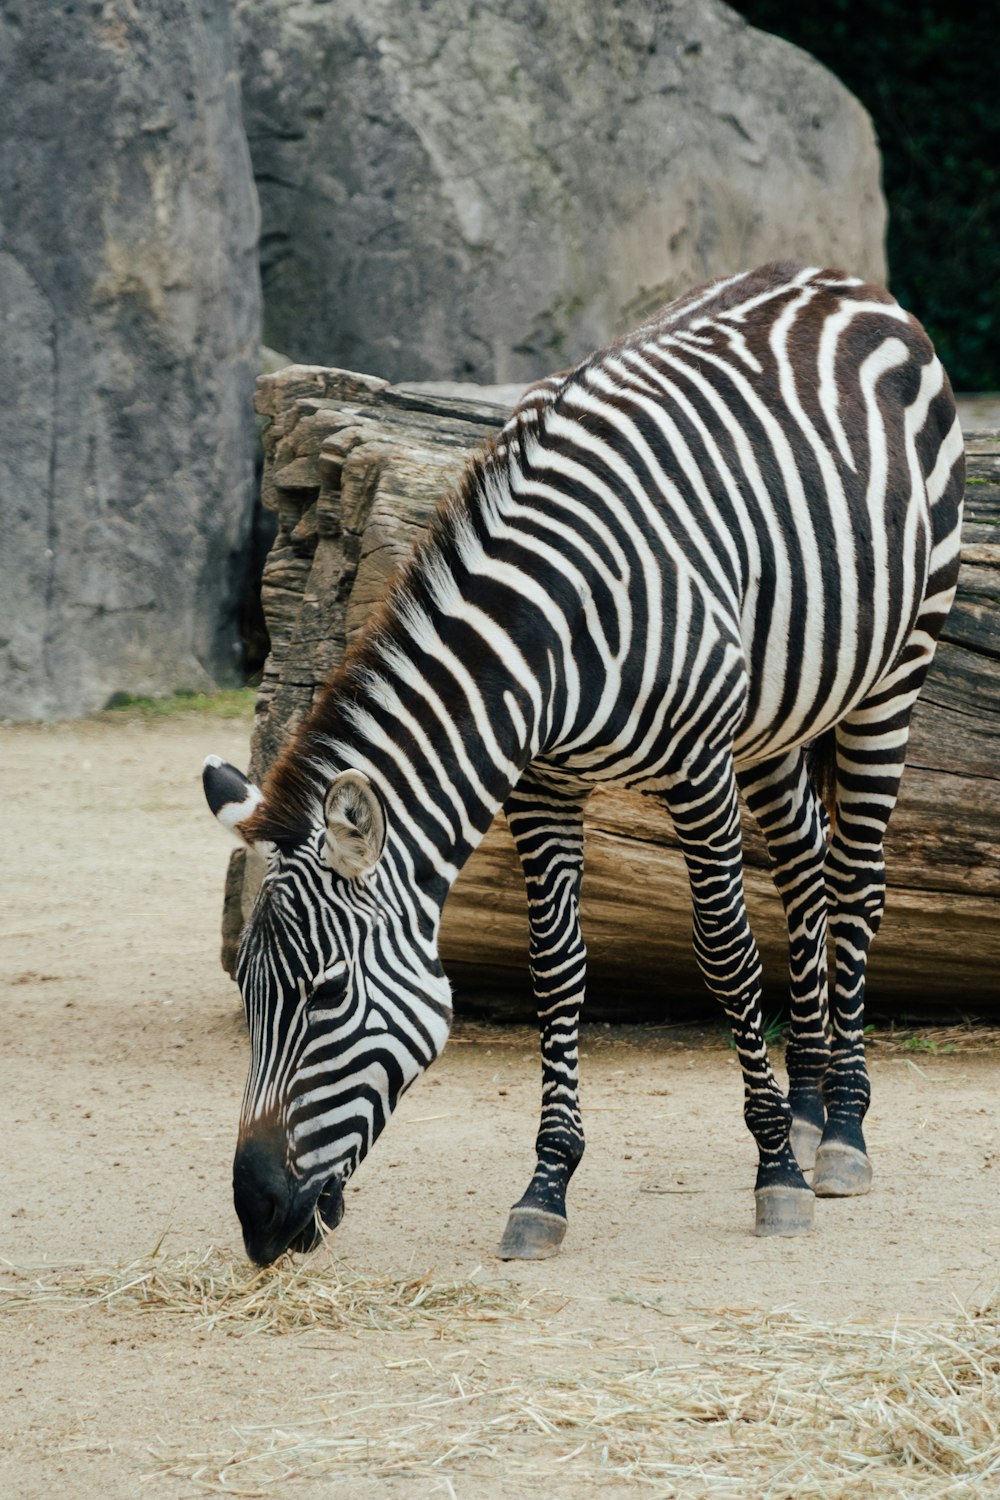 a zebra eating hay